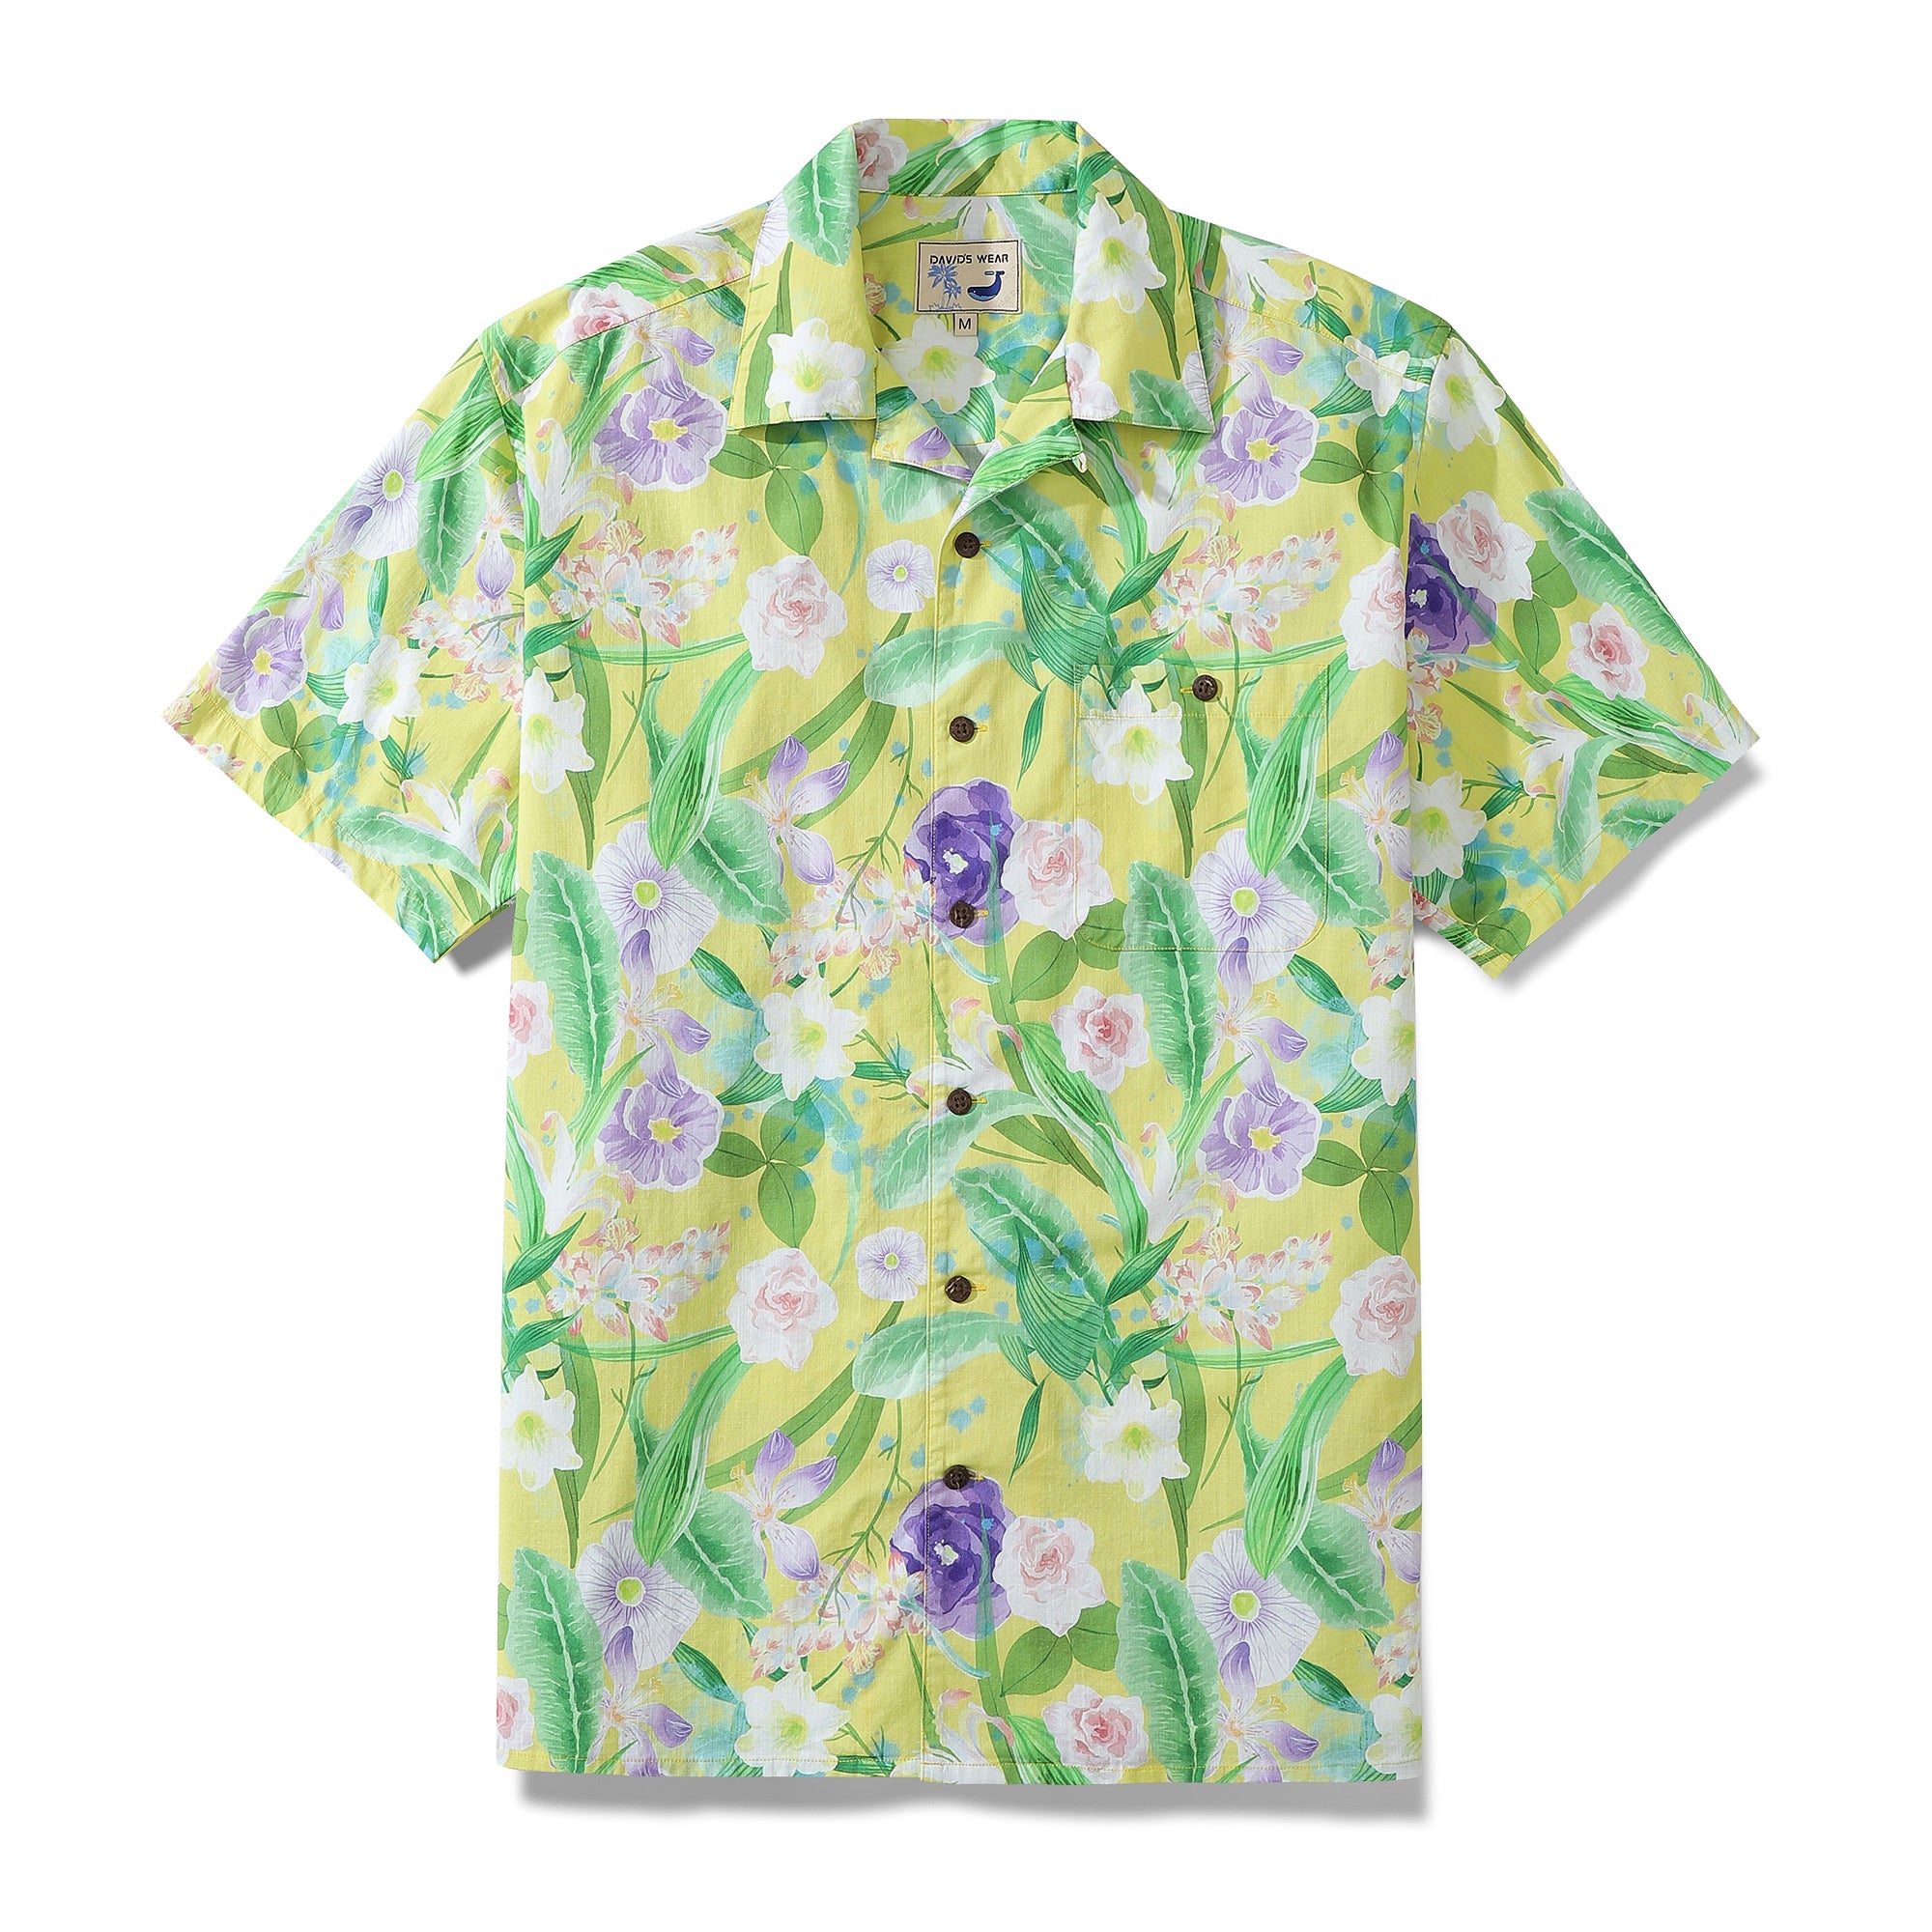 Men's Aloha Shirt Yellow Tropical Floral Cotton Camp Collar Hawaiian Shirt